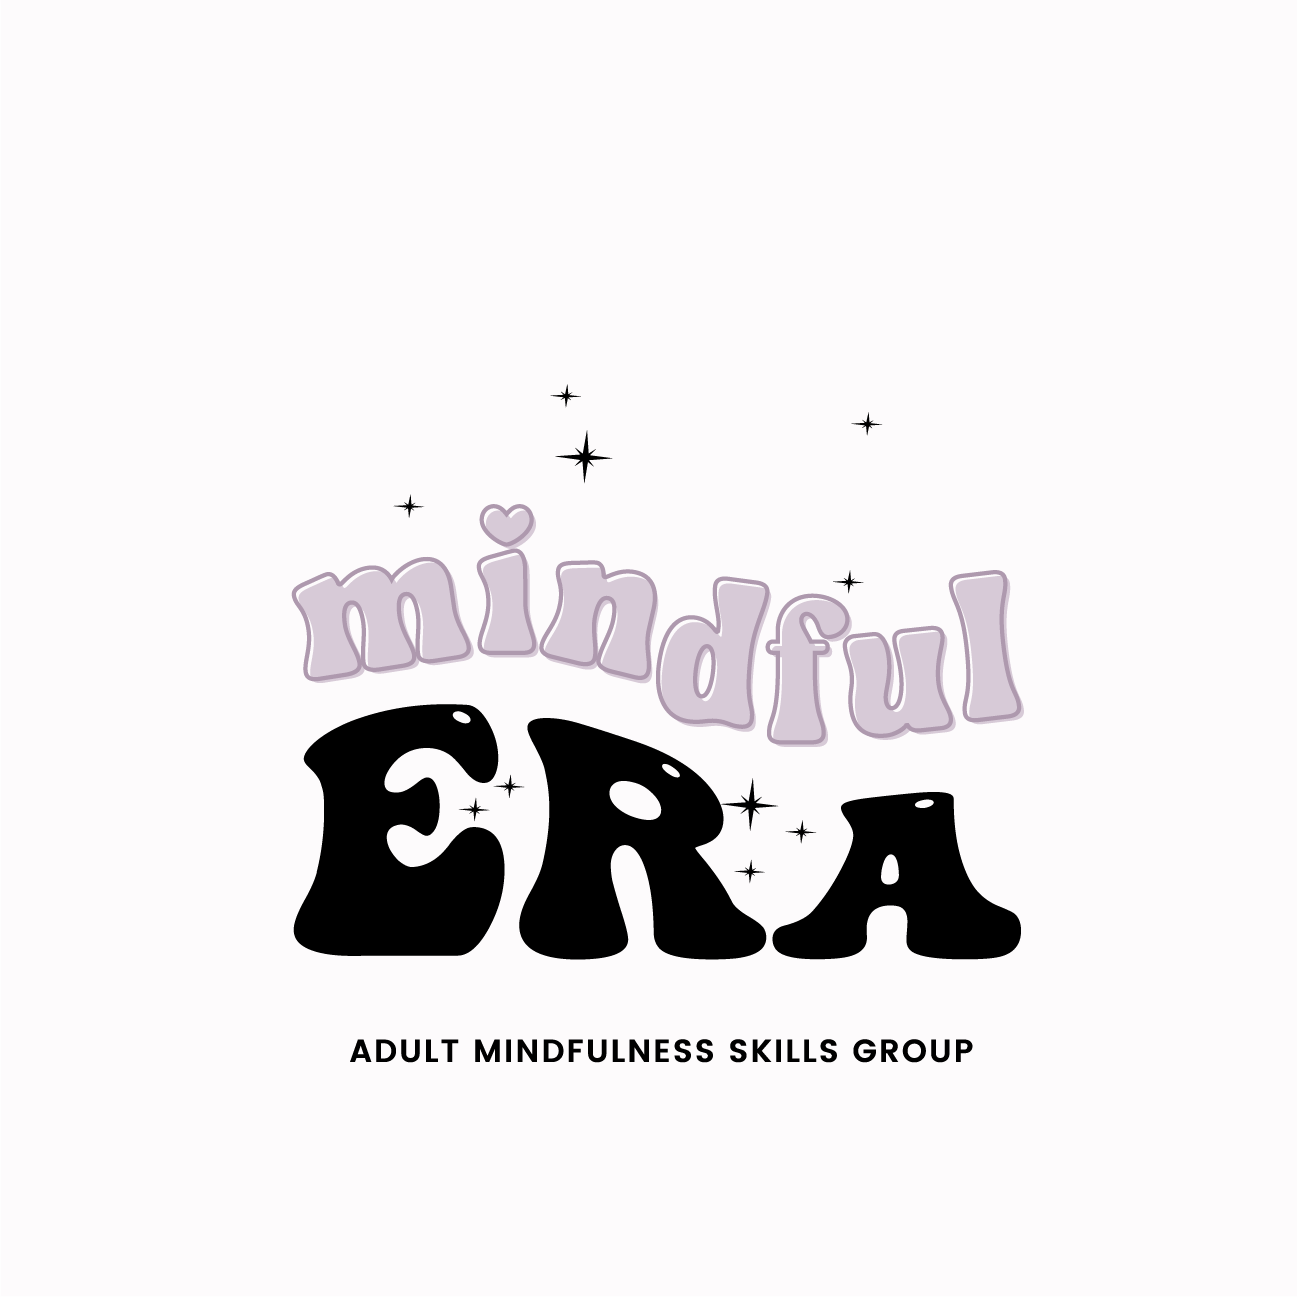 mindful era: Adult mindfulness skills group